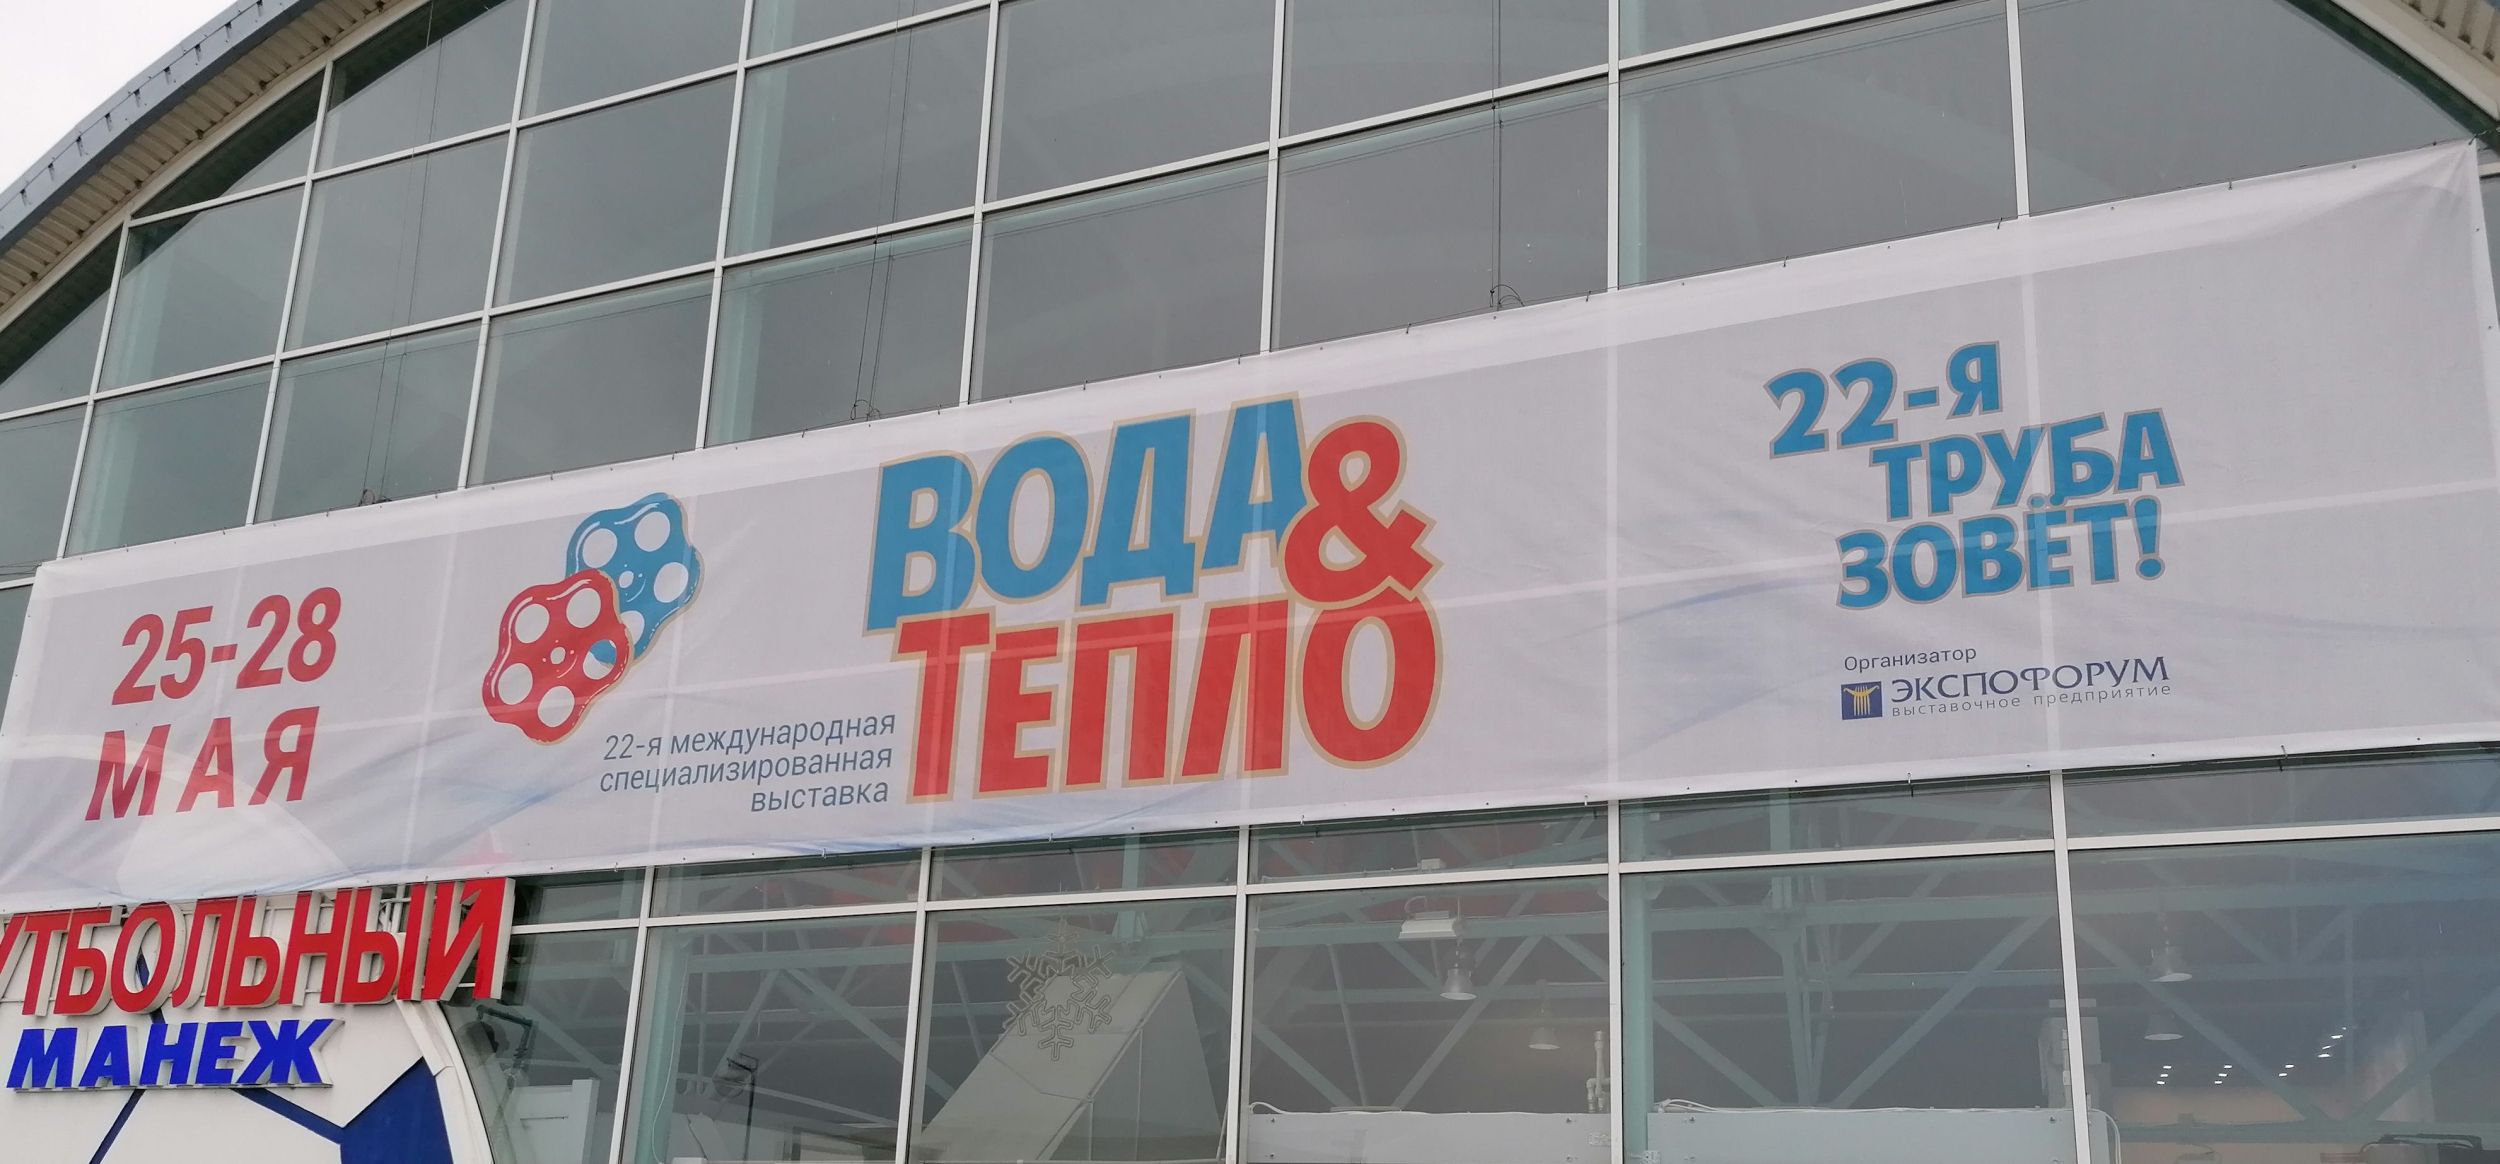 ООО «ЦИТ-Плюс» принимает участие в международной выставке «Вода и тепло-2021» в г. Минск (Республика Беларусь)